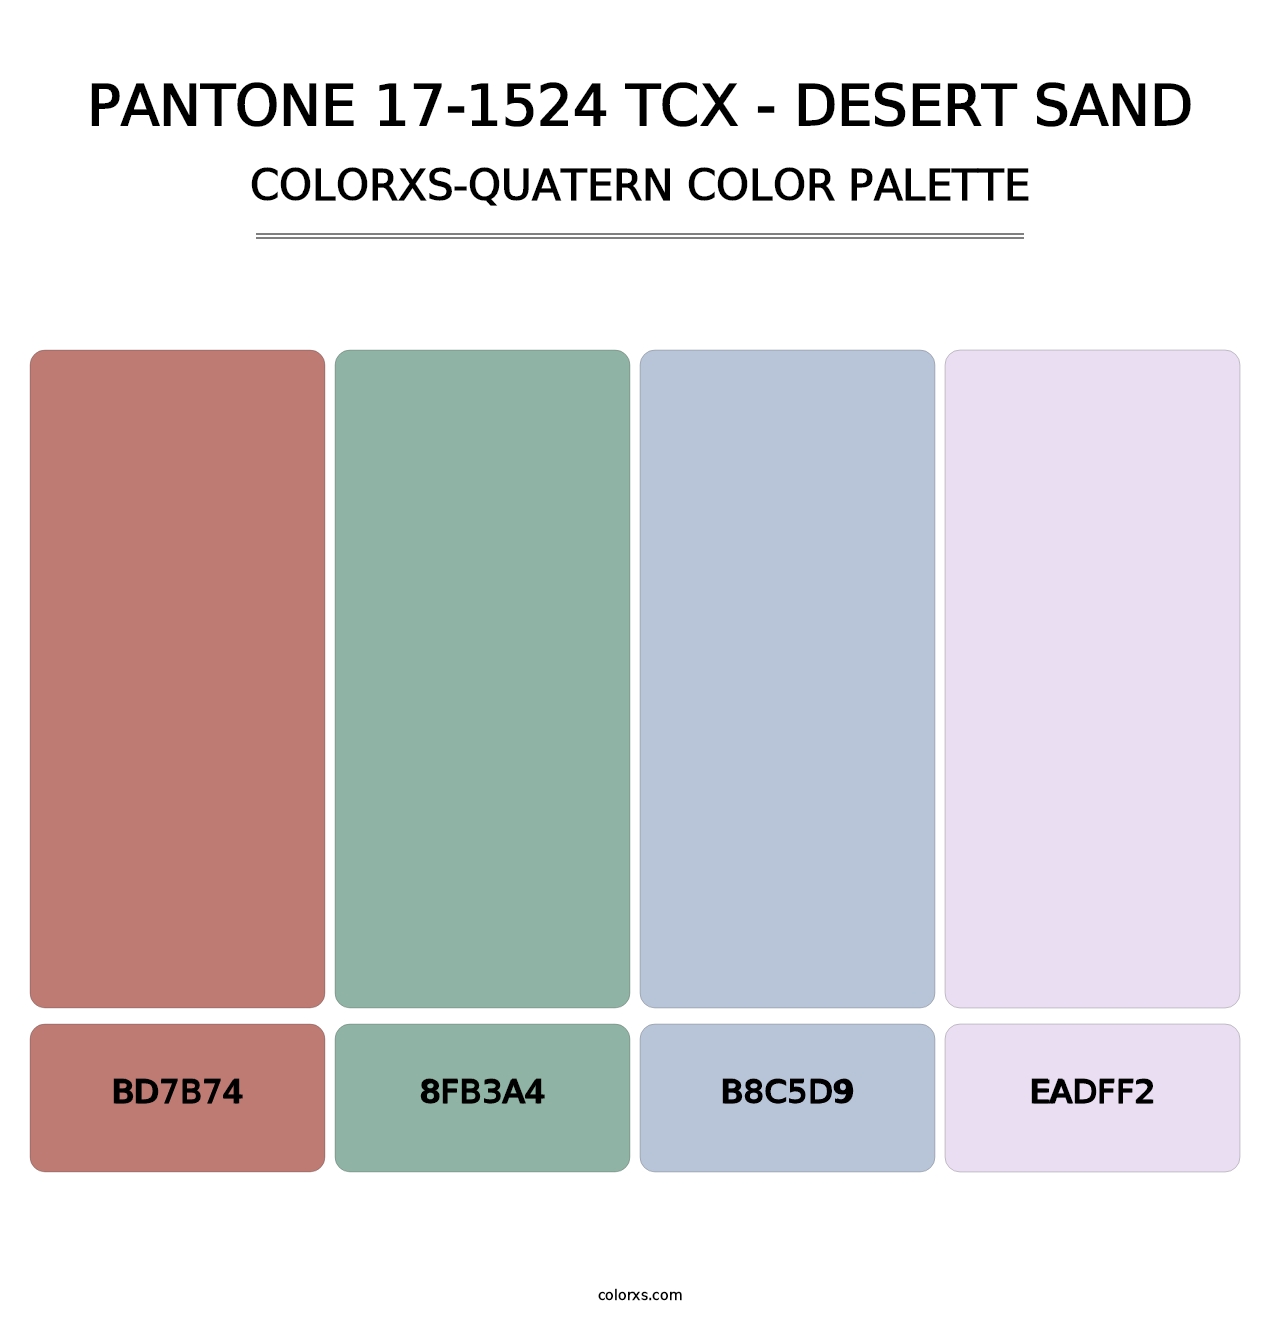 PANTONE 17-1524 TCX - Desert Sand - Colorxs Quatern Palette